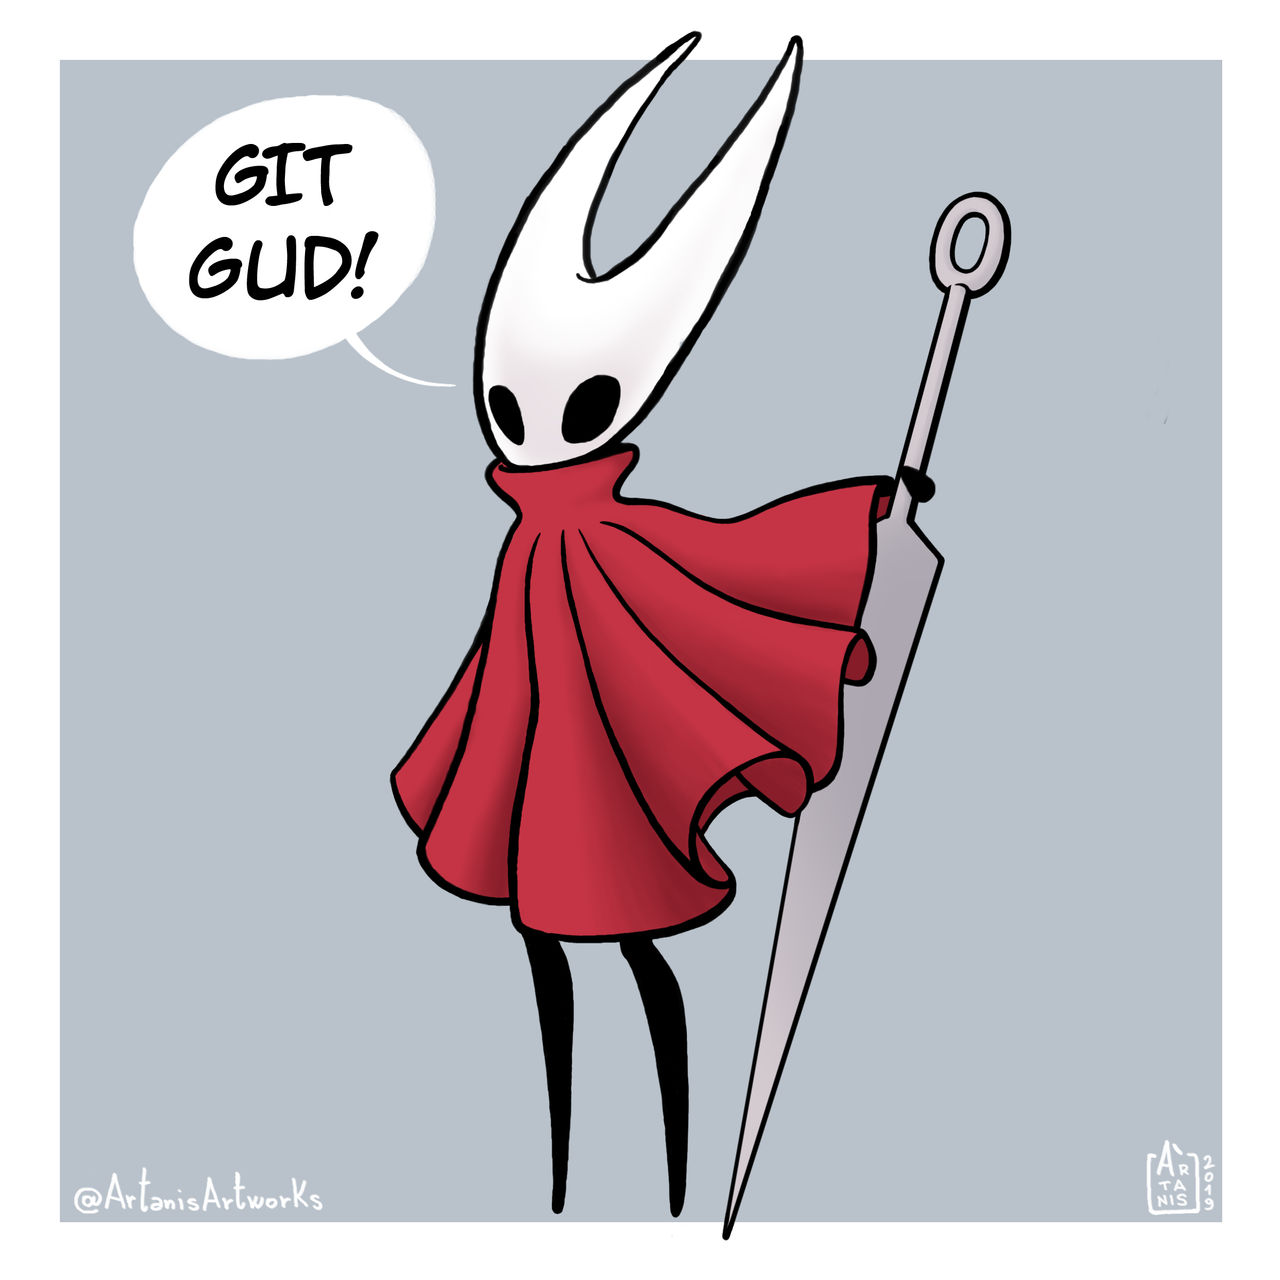 Hornet says: Git gud! by ART-RevolveR on DeviantArt